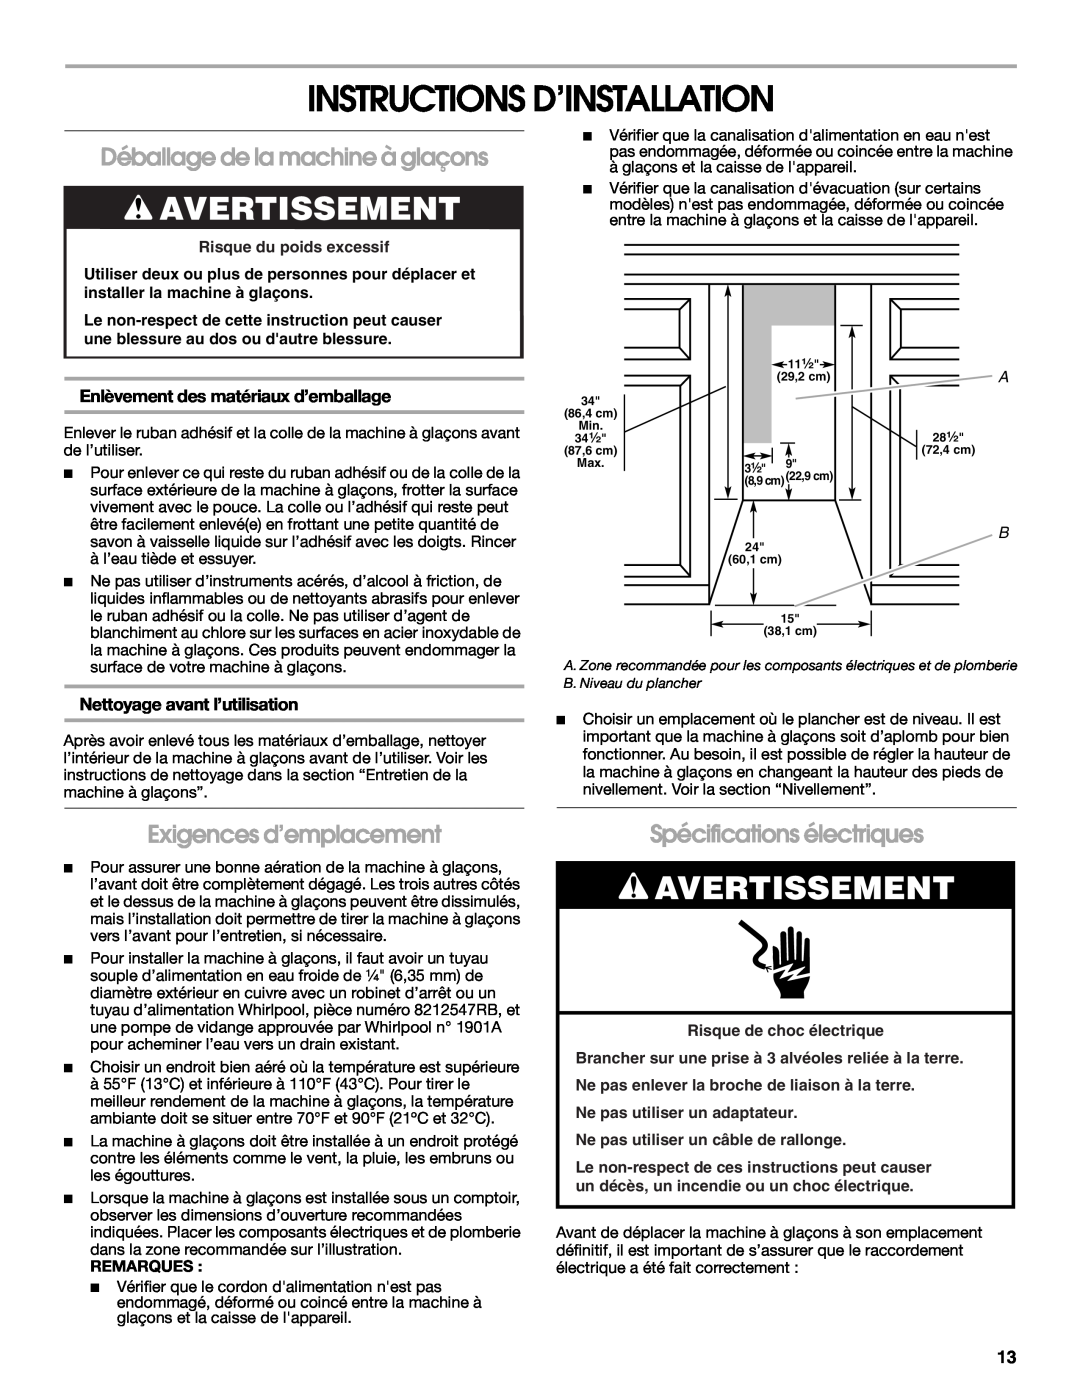 Whirlpool W10541636A Instructions D’Installation, Avertissement, Déballage de la machine à glaçons, Remarques 